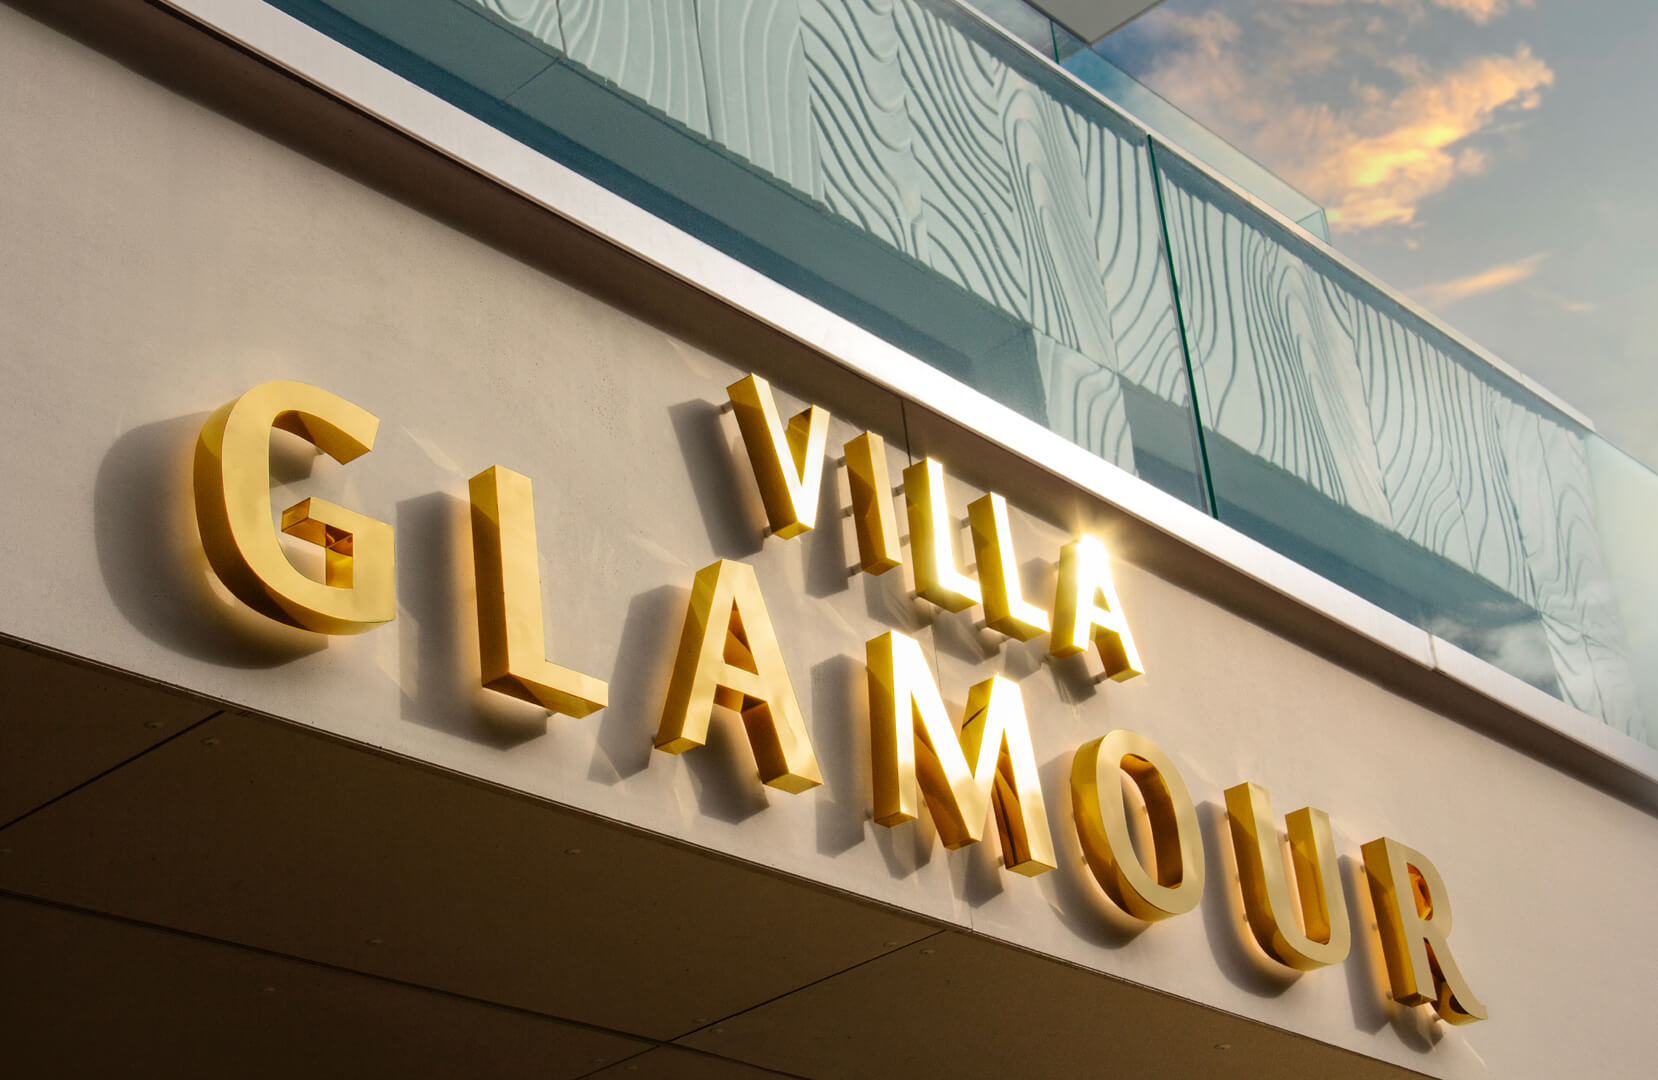 Villa Glamour - lettres en acier inoxydable poli à l'or, rétroéclairées sur le mur